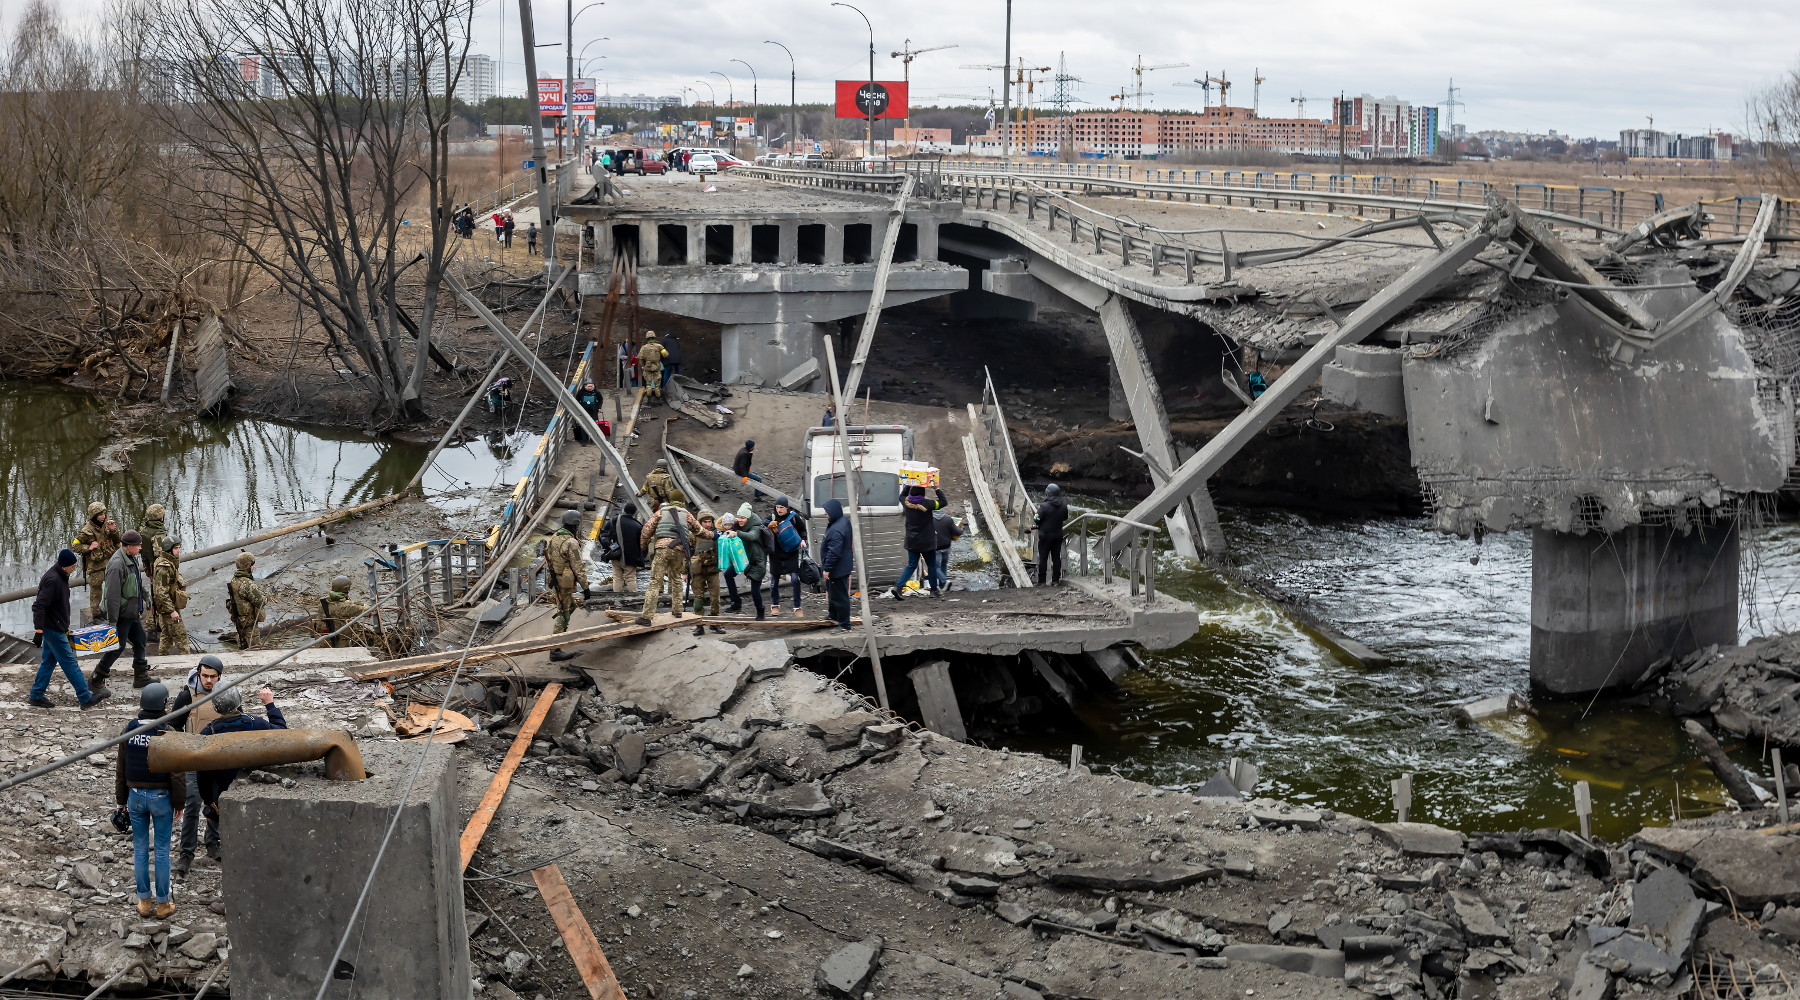 Guerra e biodiversità a rischio: ponte distrutto a Kiev